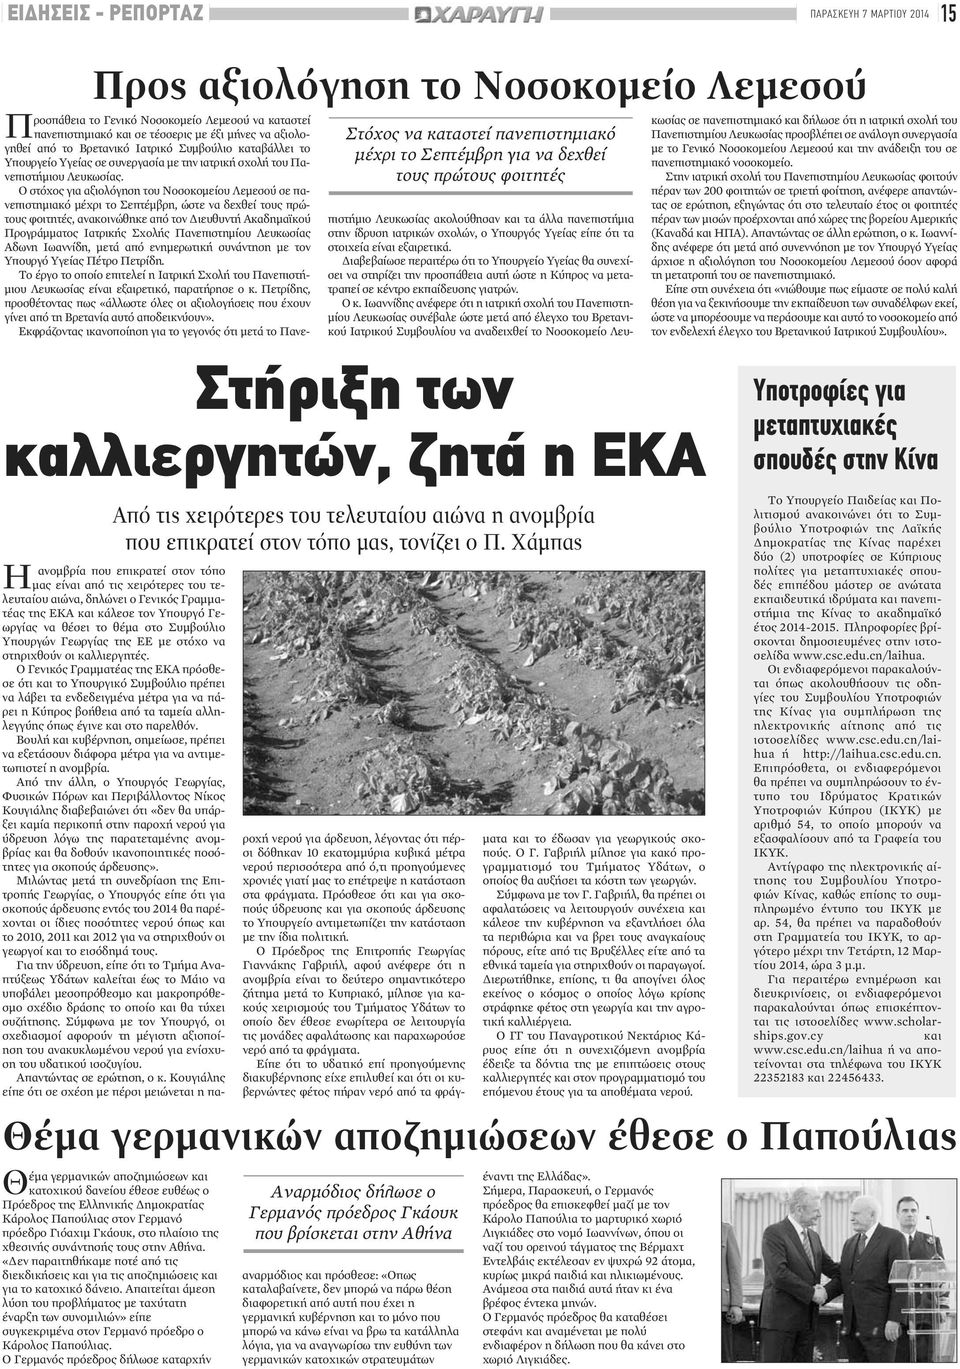 Χάμπας ανομβρία που επικρατεί στον τόπο μας είναι από τις χειρότερες του τελευταίου αιώνα, δηλώνει ο Γενικός Γραμματέας της ΕΚΑ και κάλεσε τον Υπουργό Γεωργίας να θέσει το θέμα στο Συμβούλιο Υπουργών